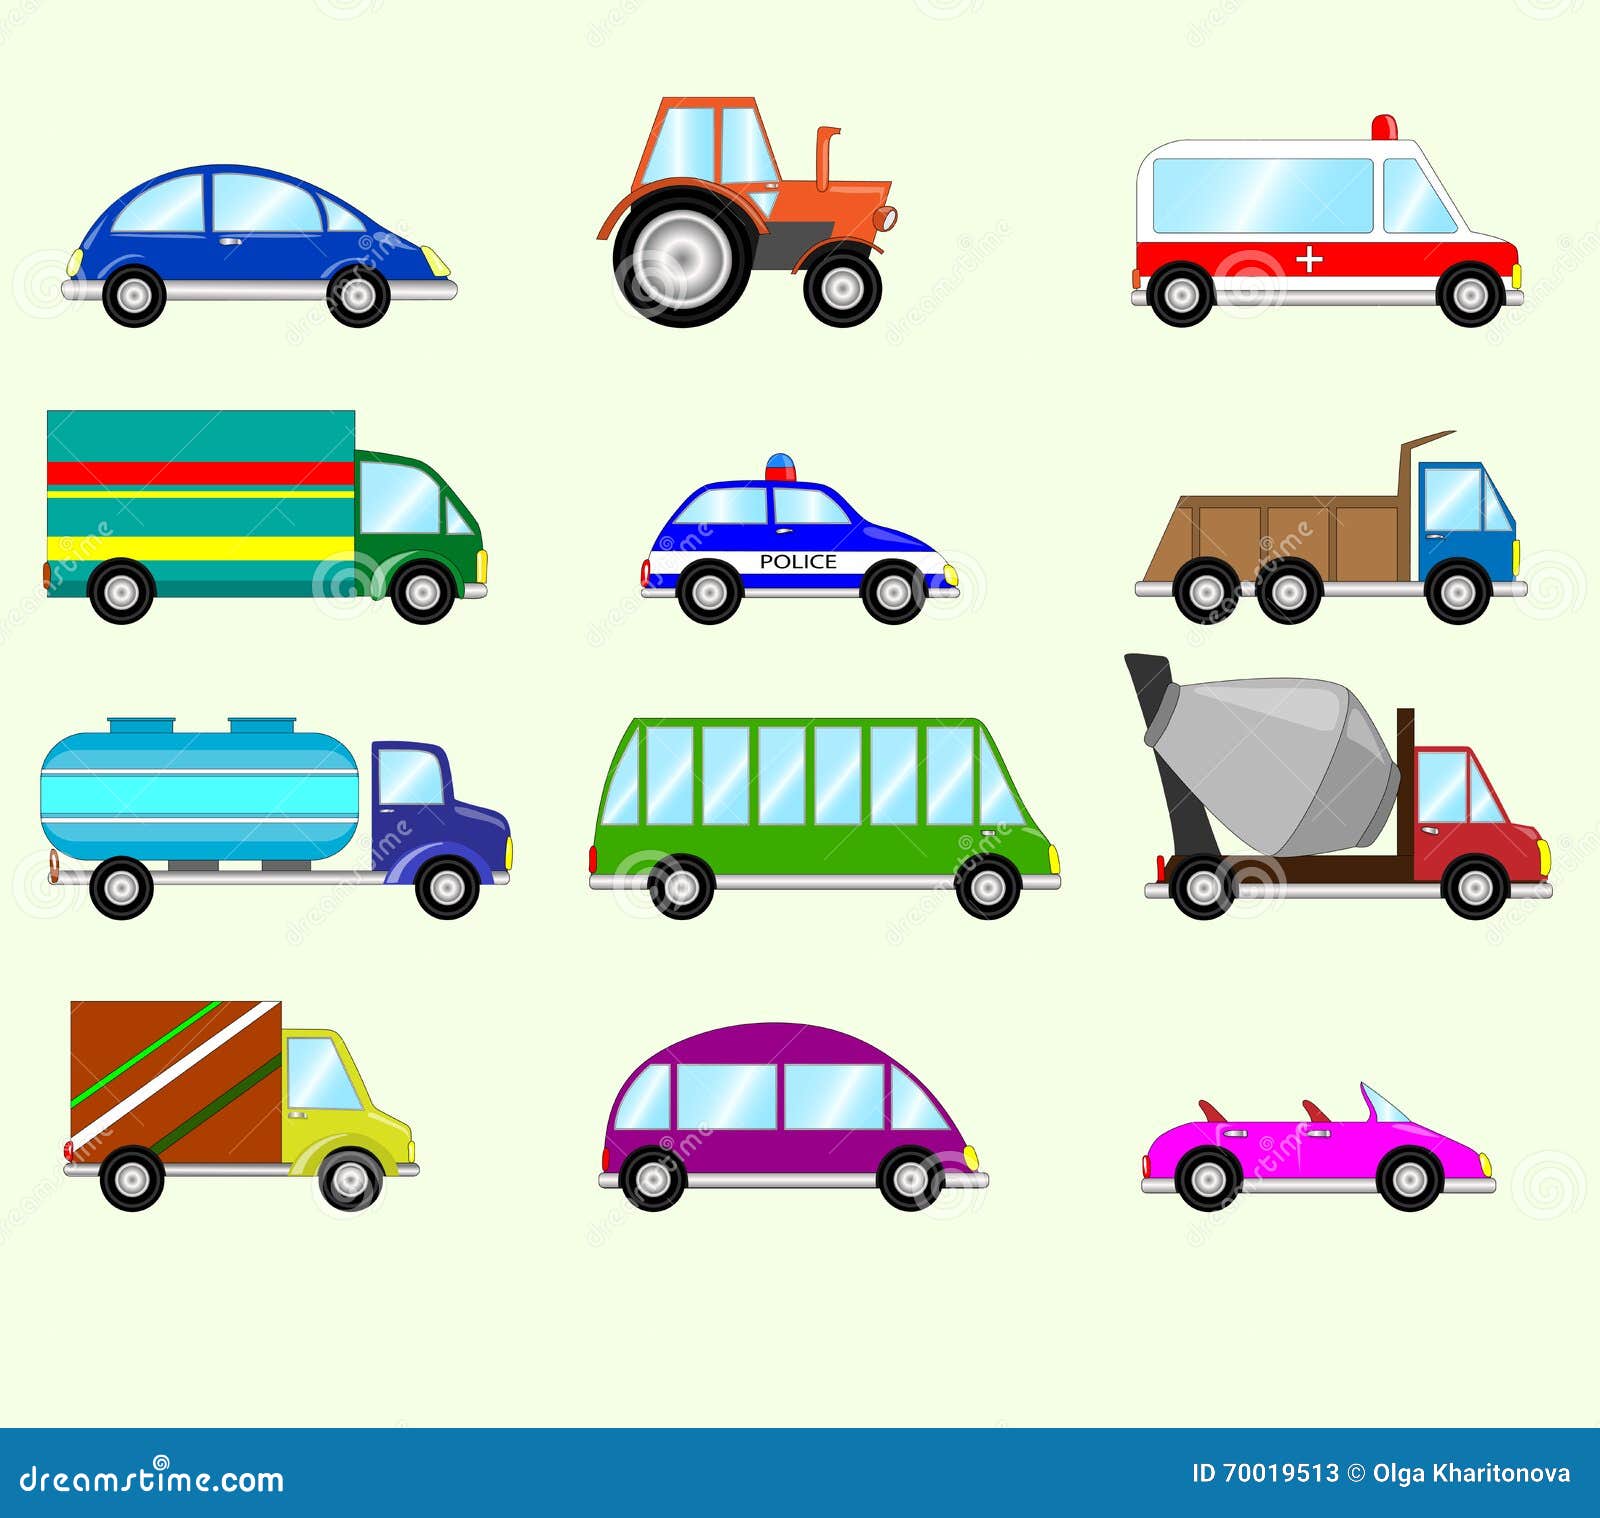  Vehicles